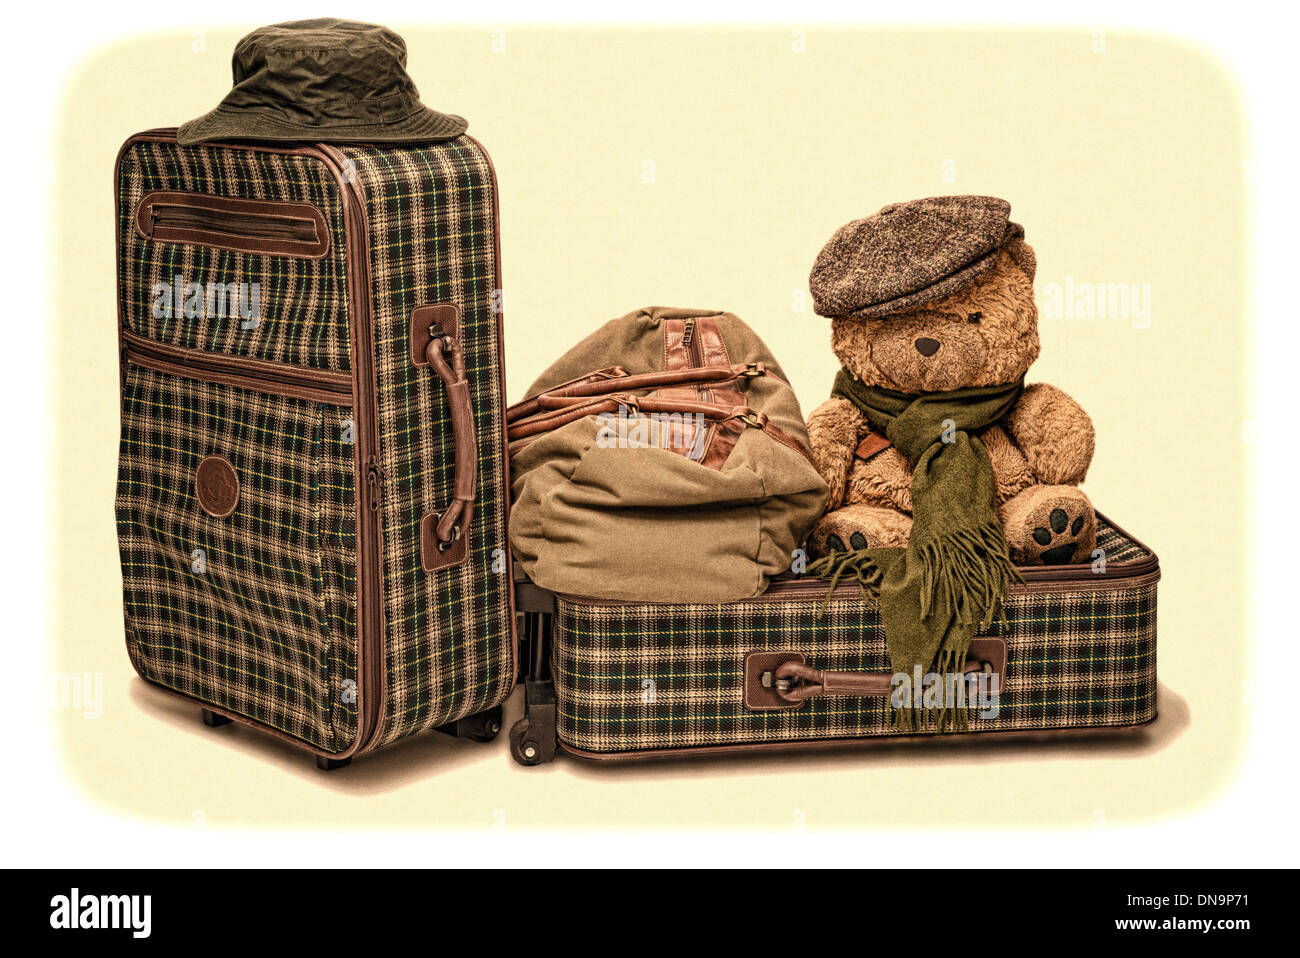 Deux valises, un sac et un ours avec un chapeau. Traité pour lui donner un look à l'ancienne Banque D'Images